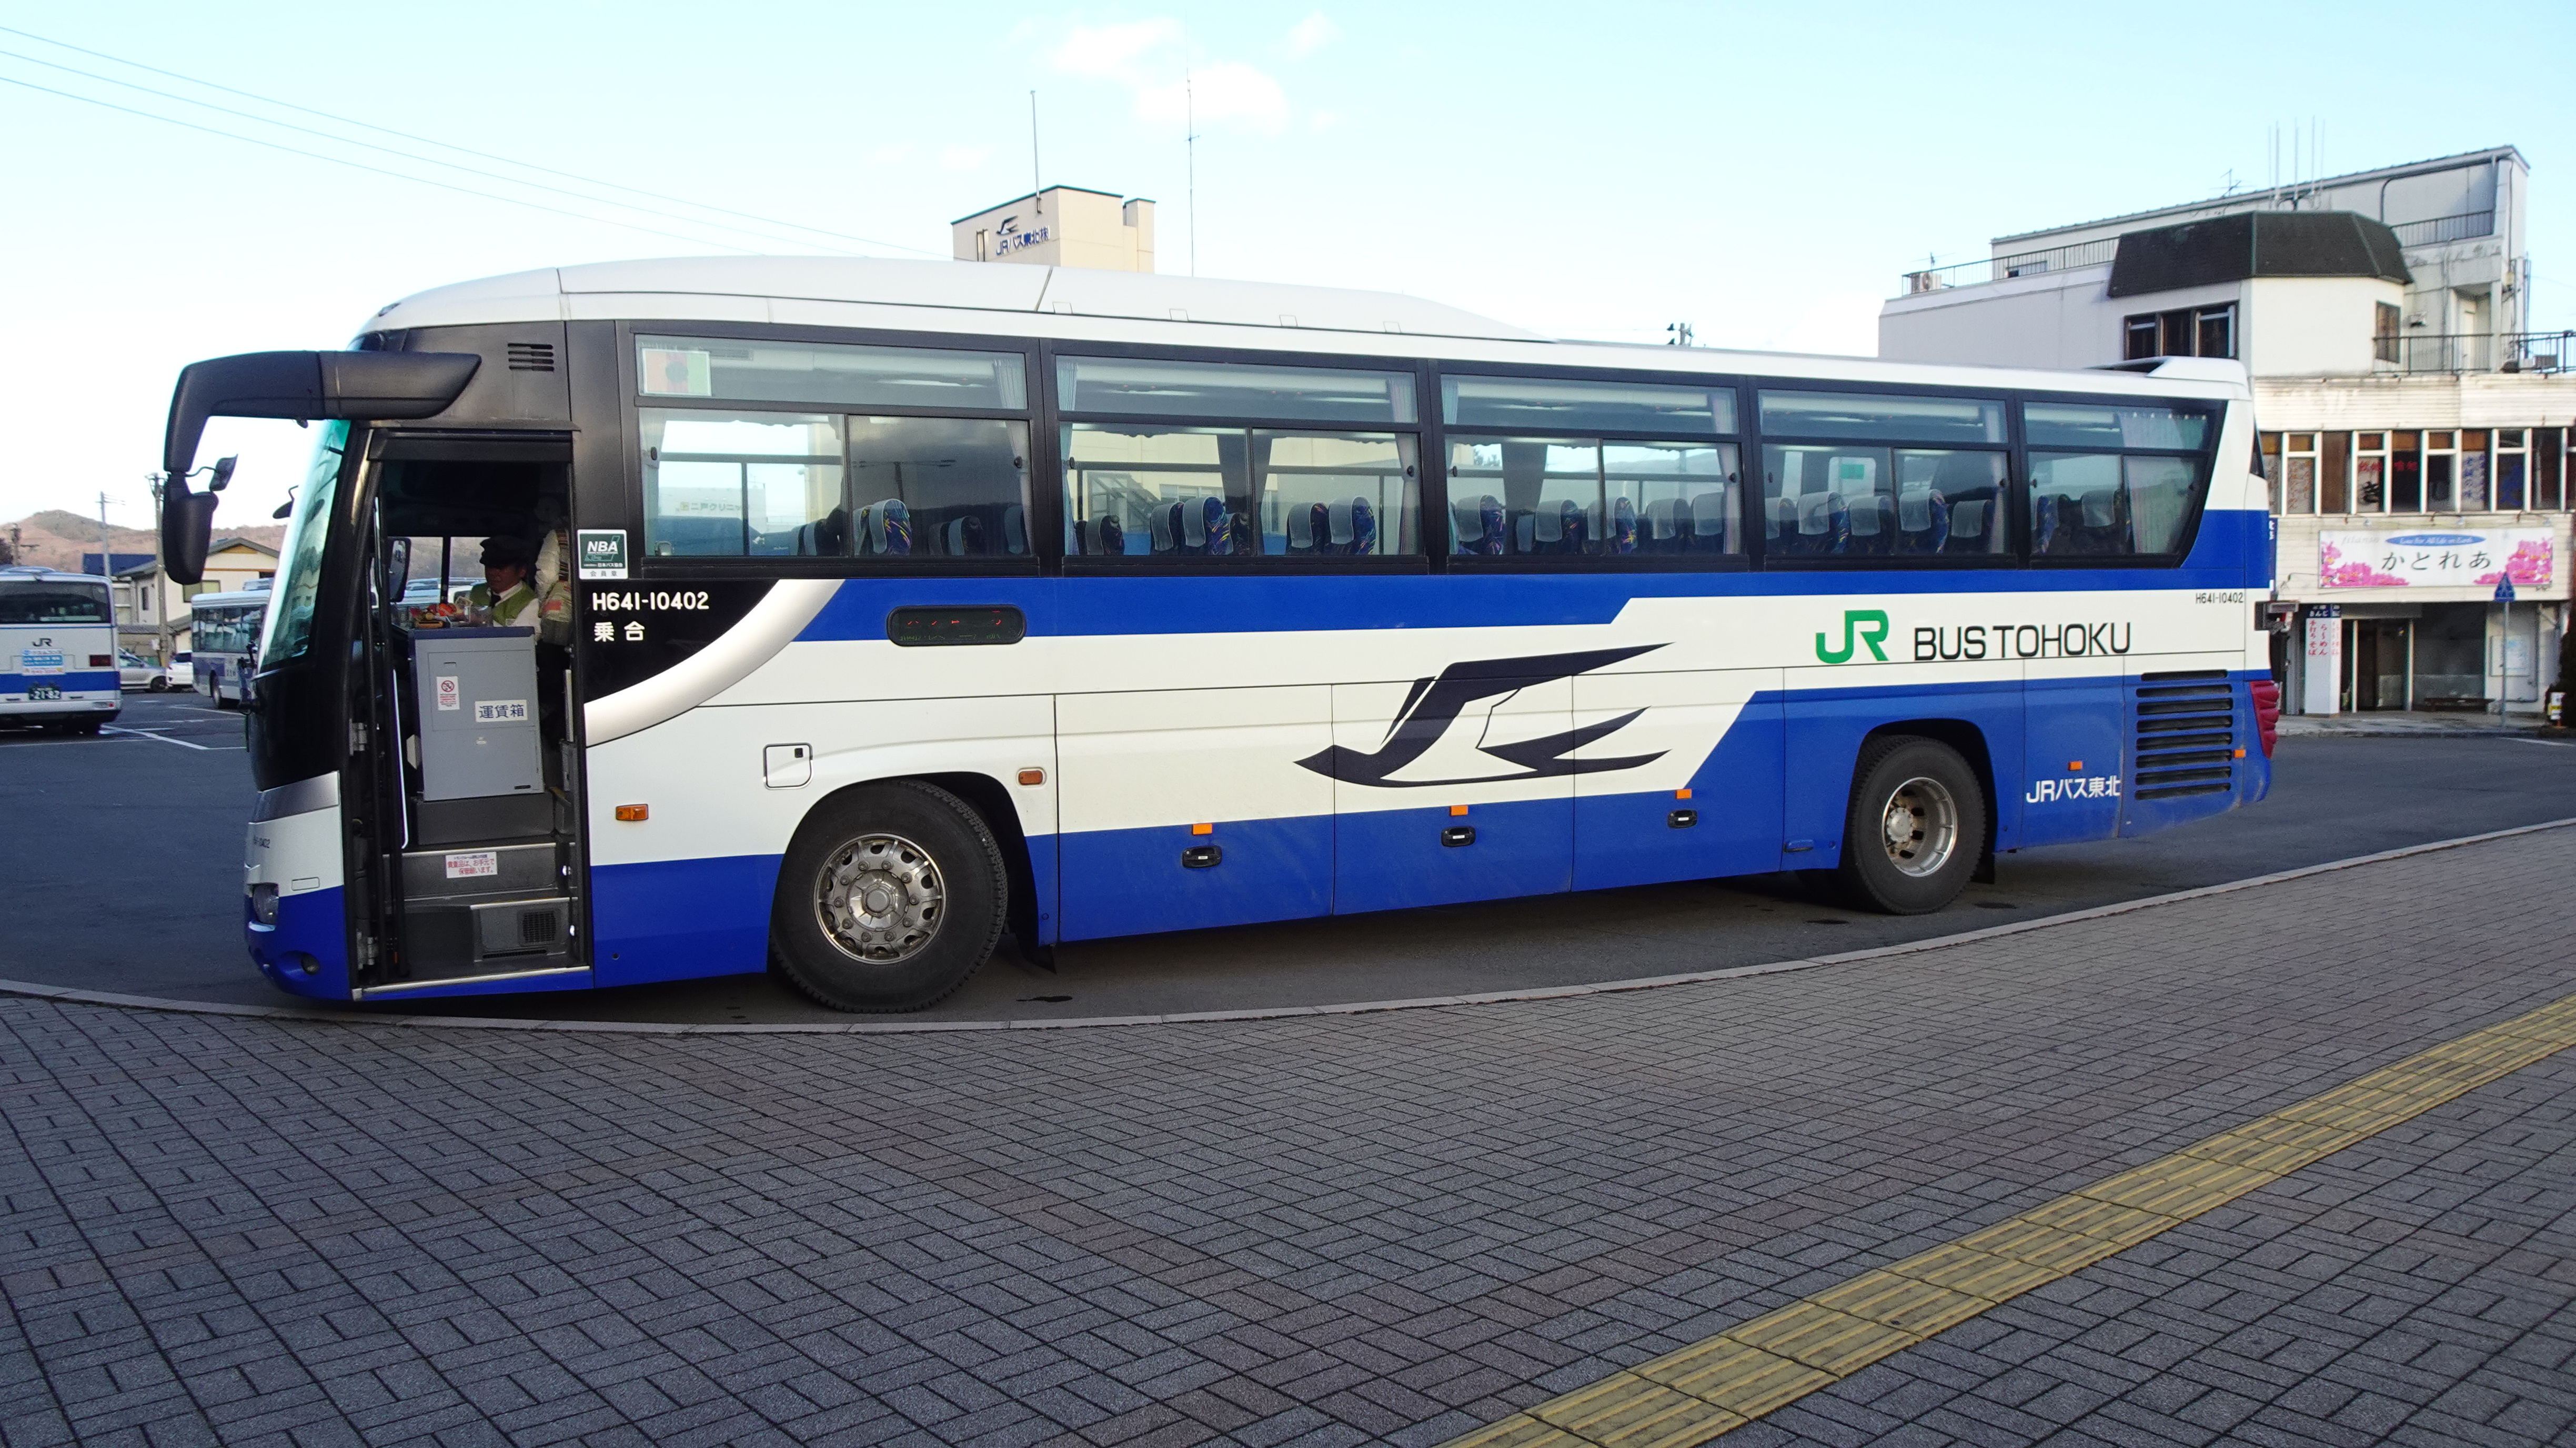 駅探訪 二戸駅でjrバスと東北新幹線を楽しむ 出発進行